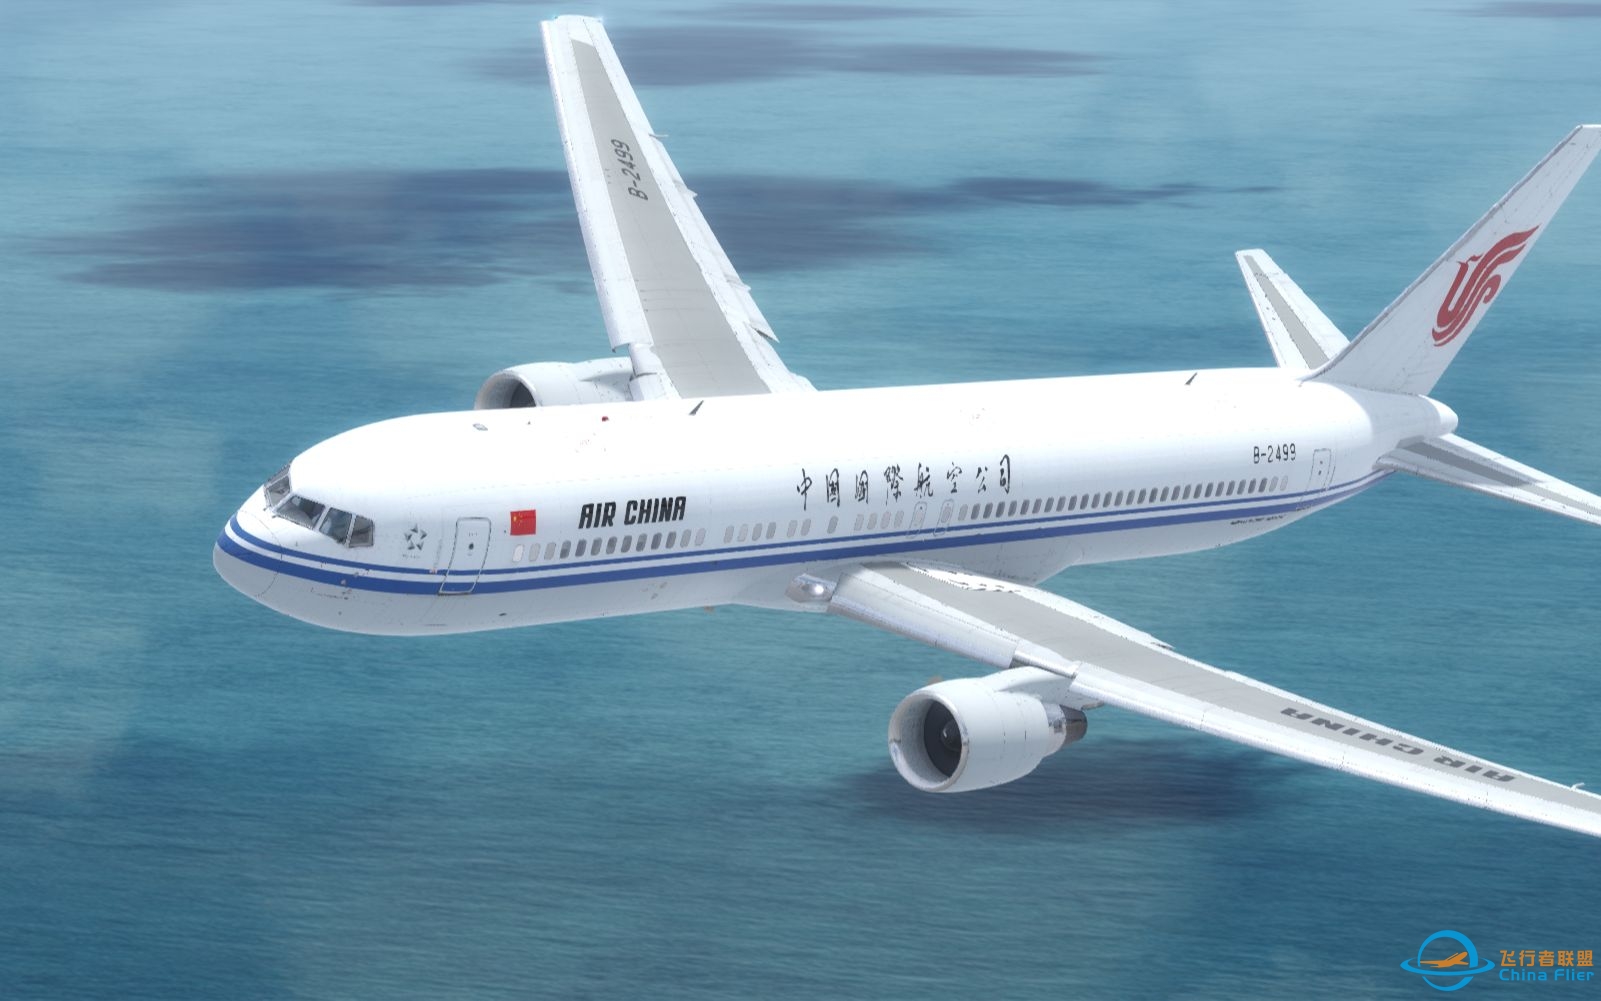 【Prepar3D落地】中国国际航空波音767-300ER落地上海虹桥-2708 